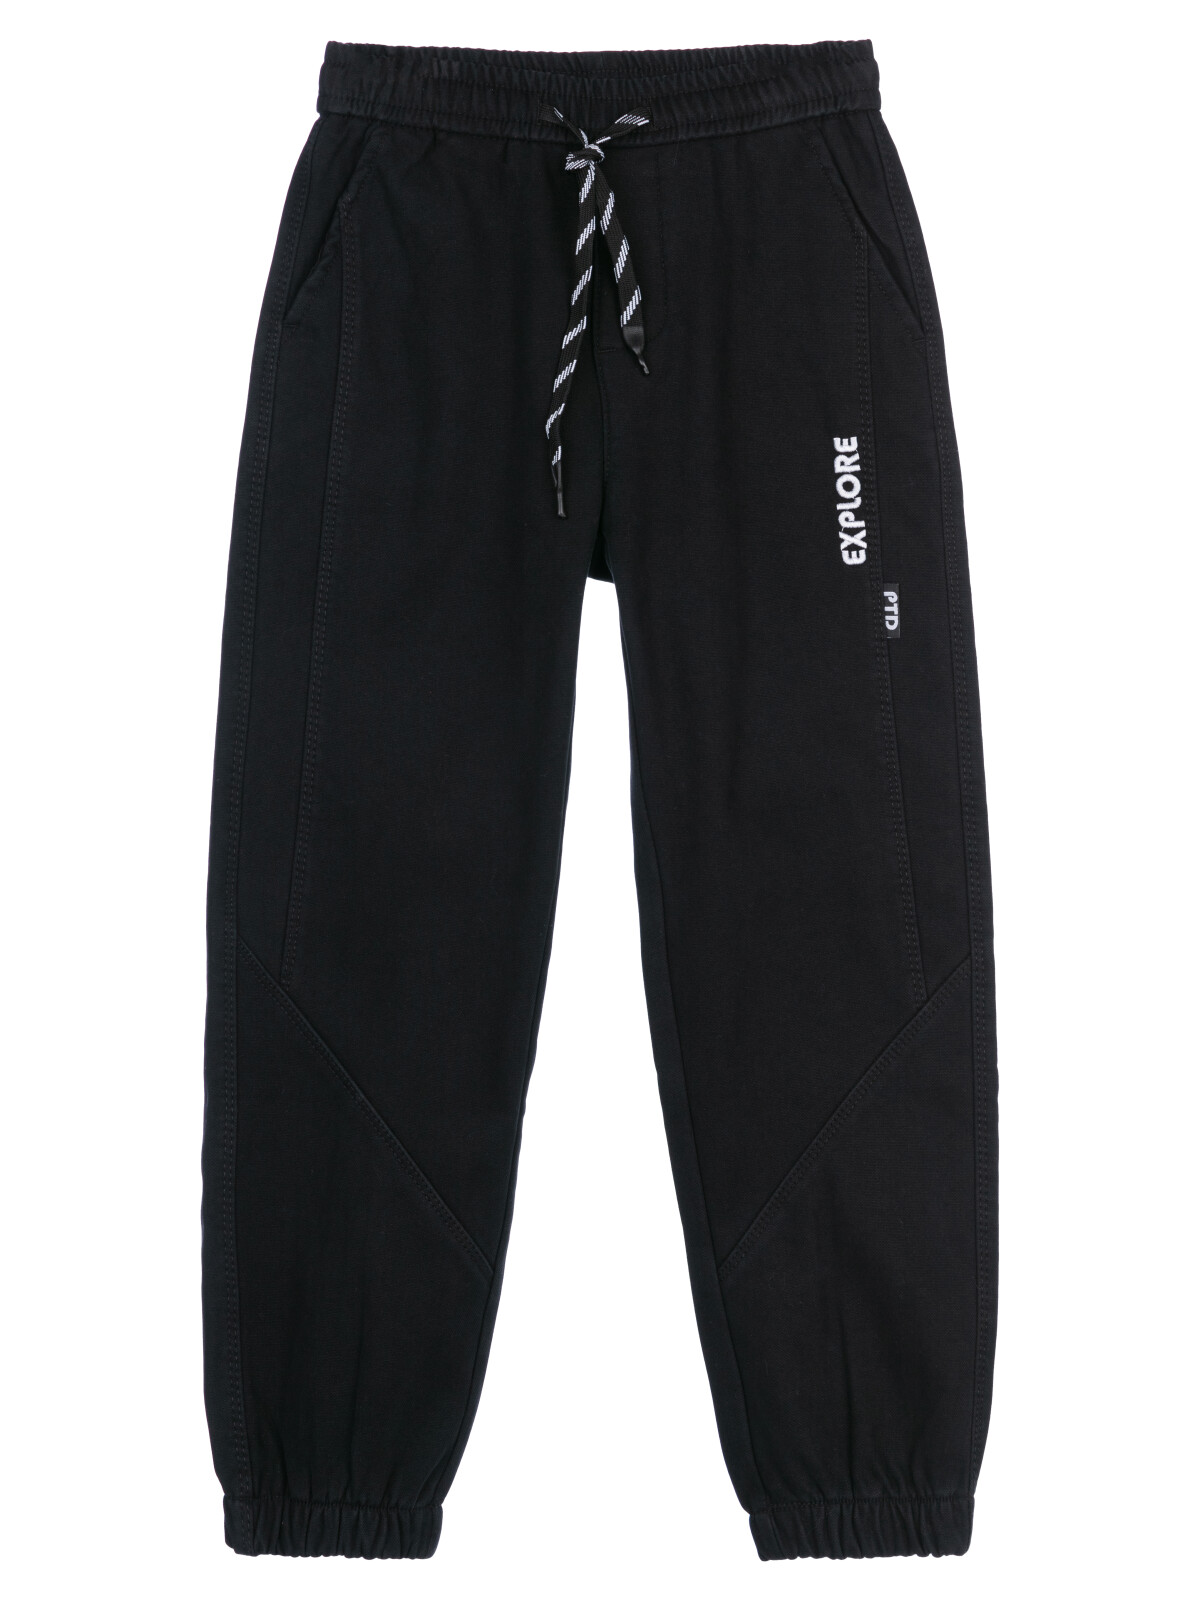 Брюки текстильные джинсовые утепленные флисом для мальчиков PlayToday, черный, 128